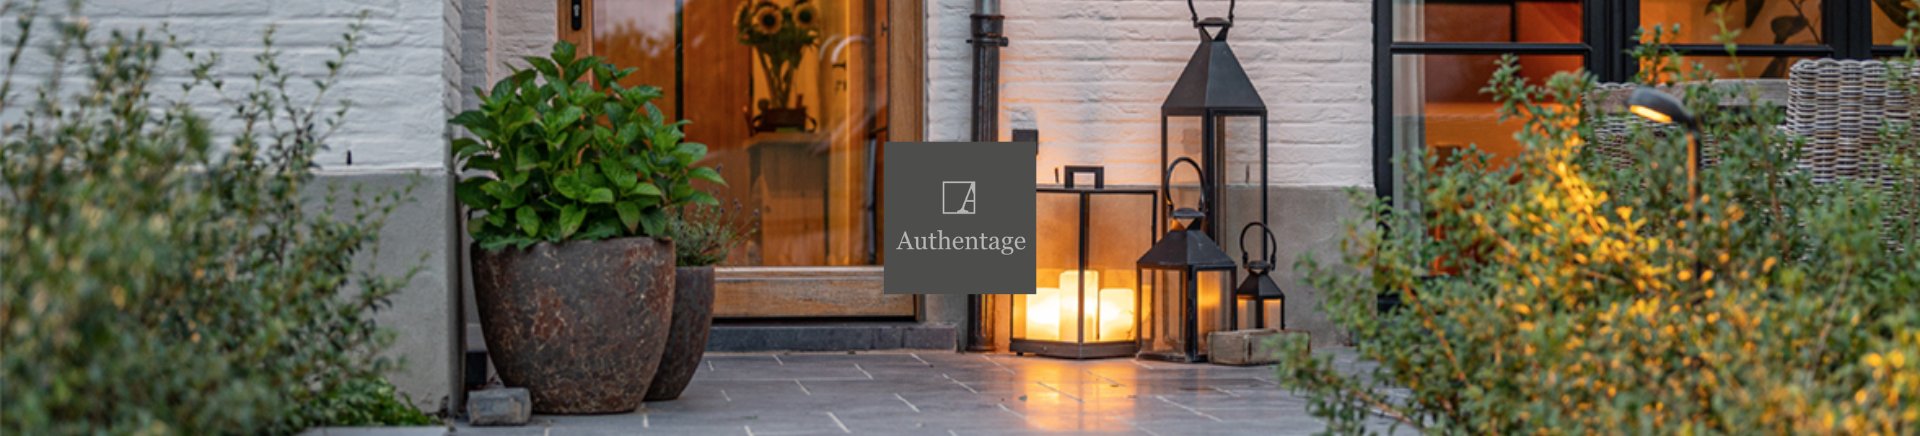 Authentage-Premium-Oświetlenie-ogrodowe-Do-Wnętrz-Luksusowe-Oprawy